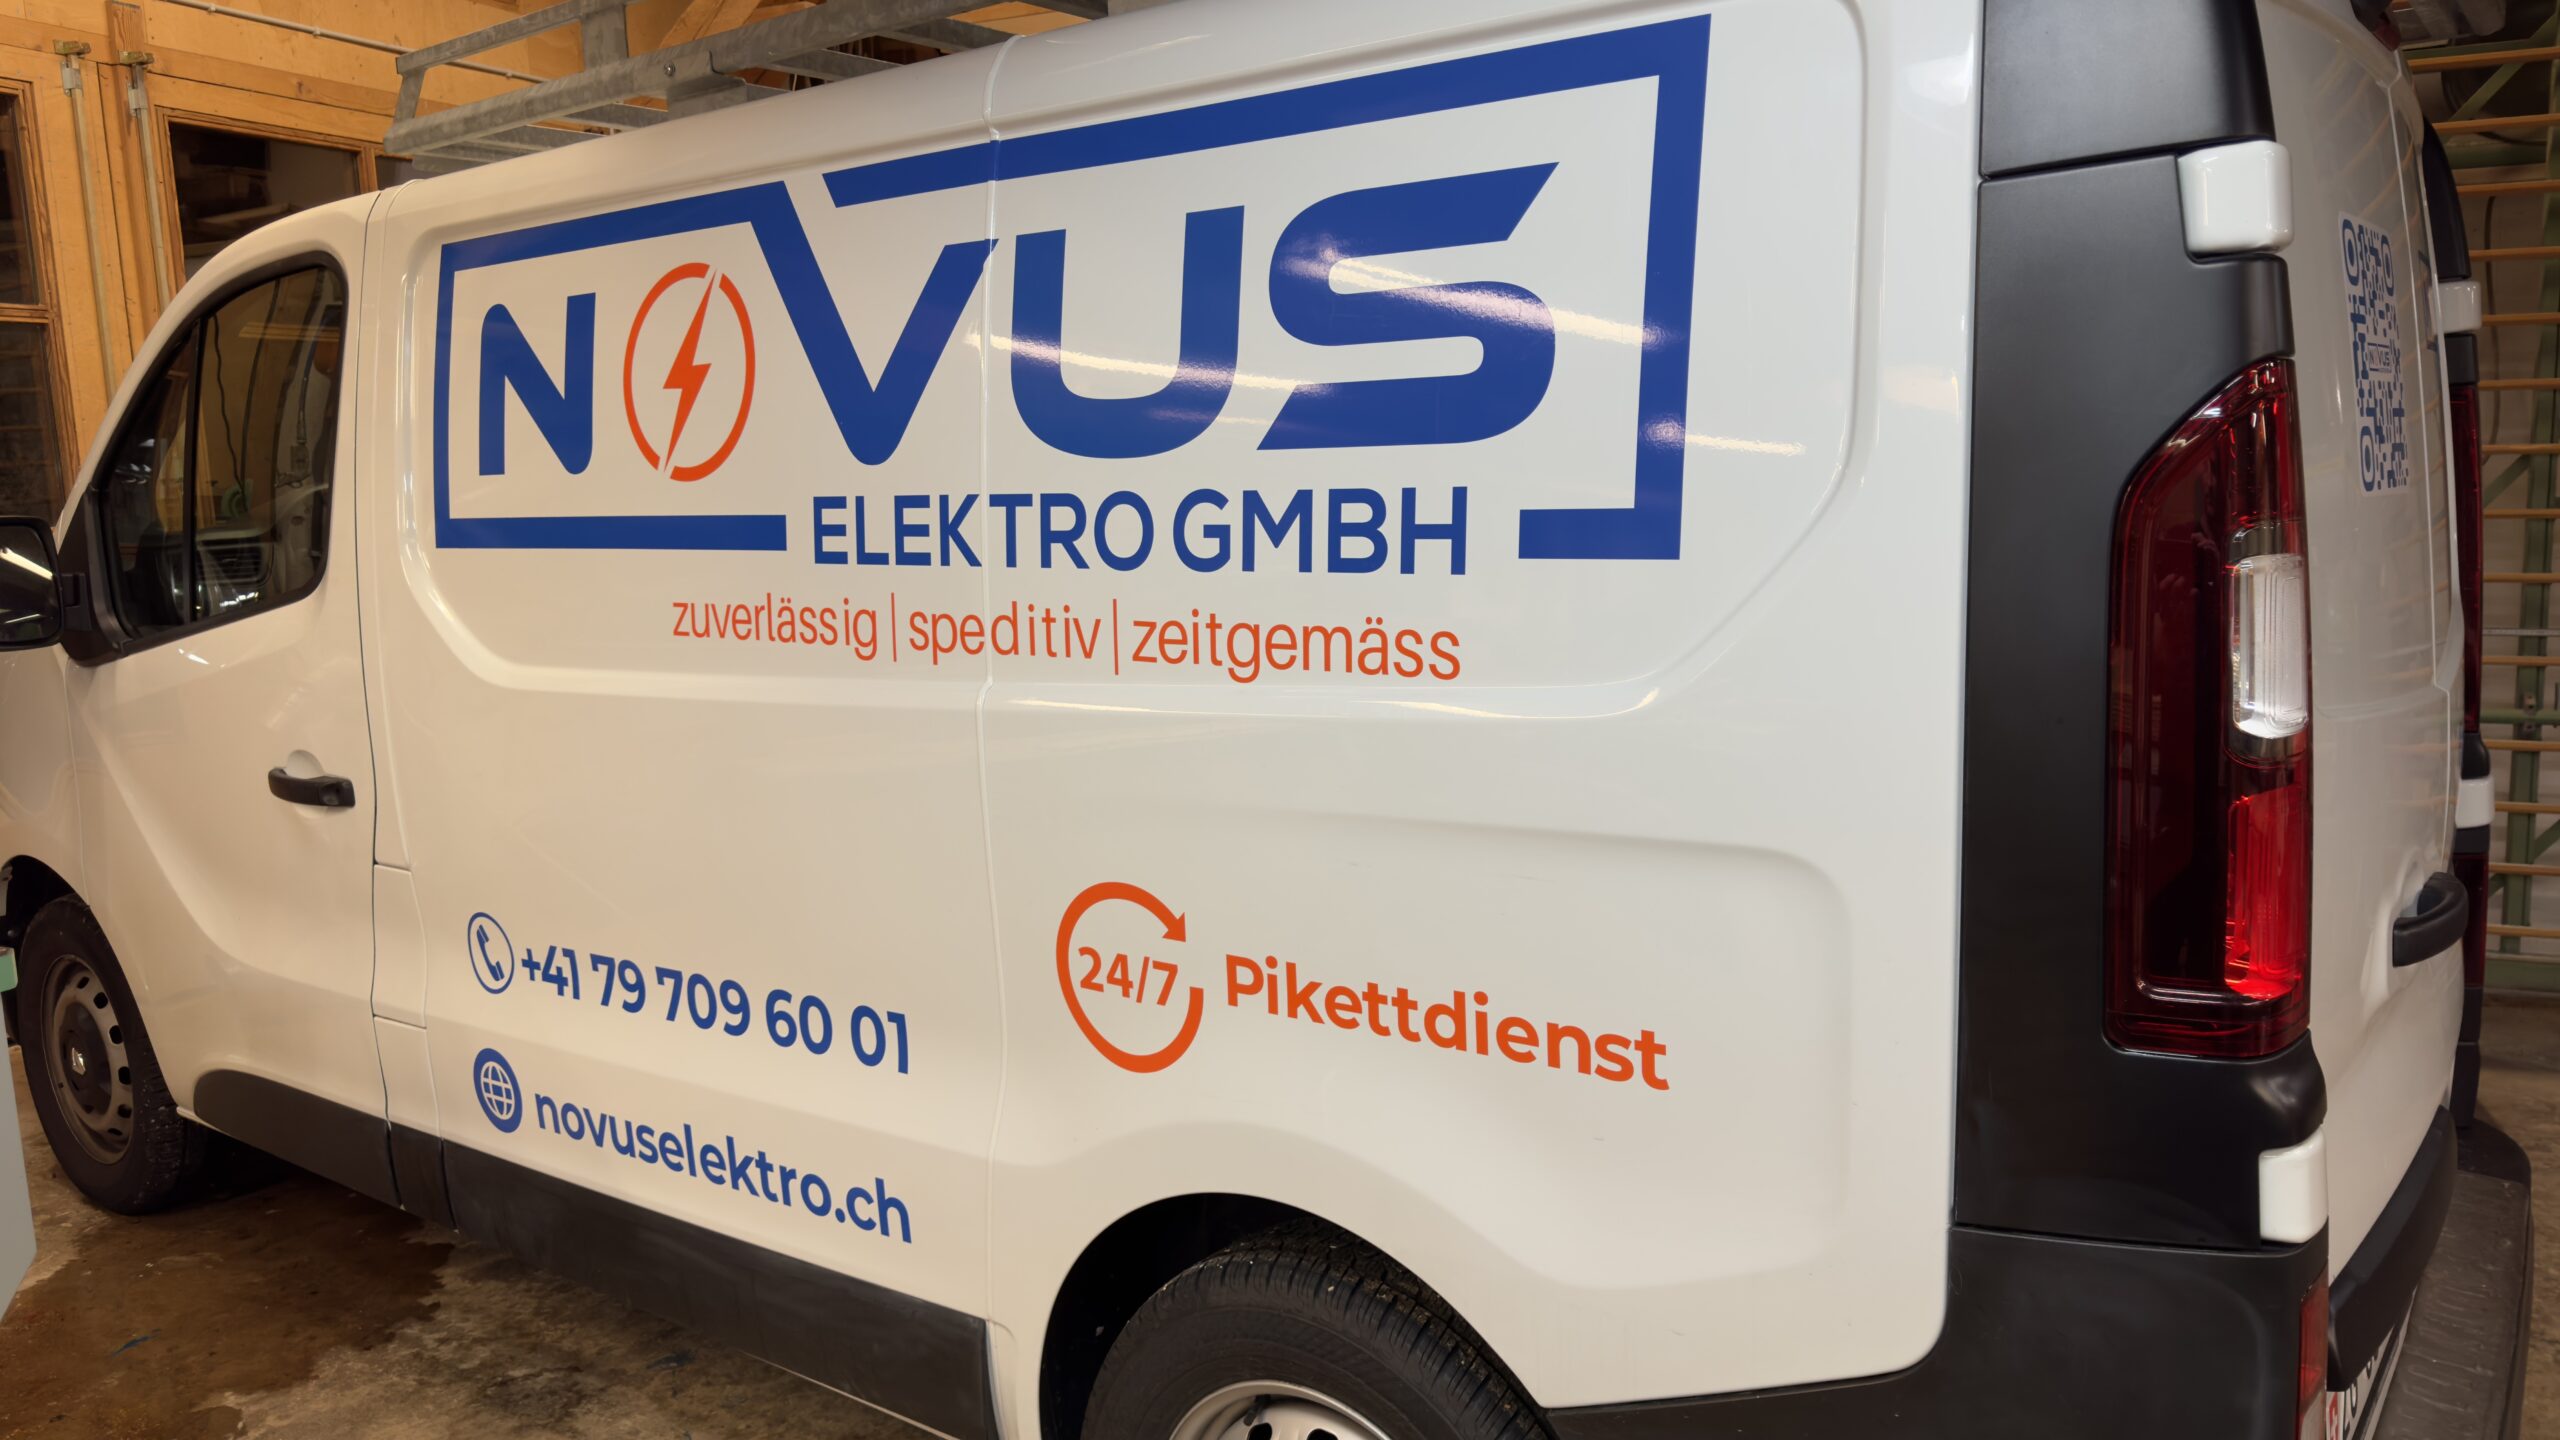 Featured image for “Neues Branding für die Straße: Novus Elektro GmbH auf dem Weg nach oben”